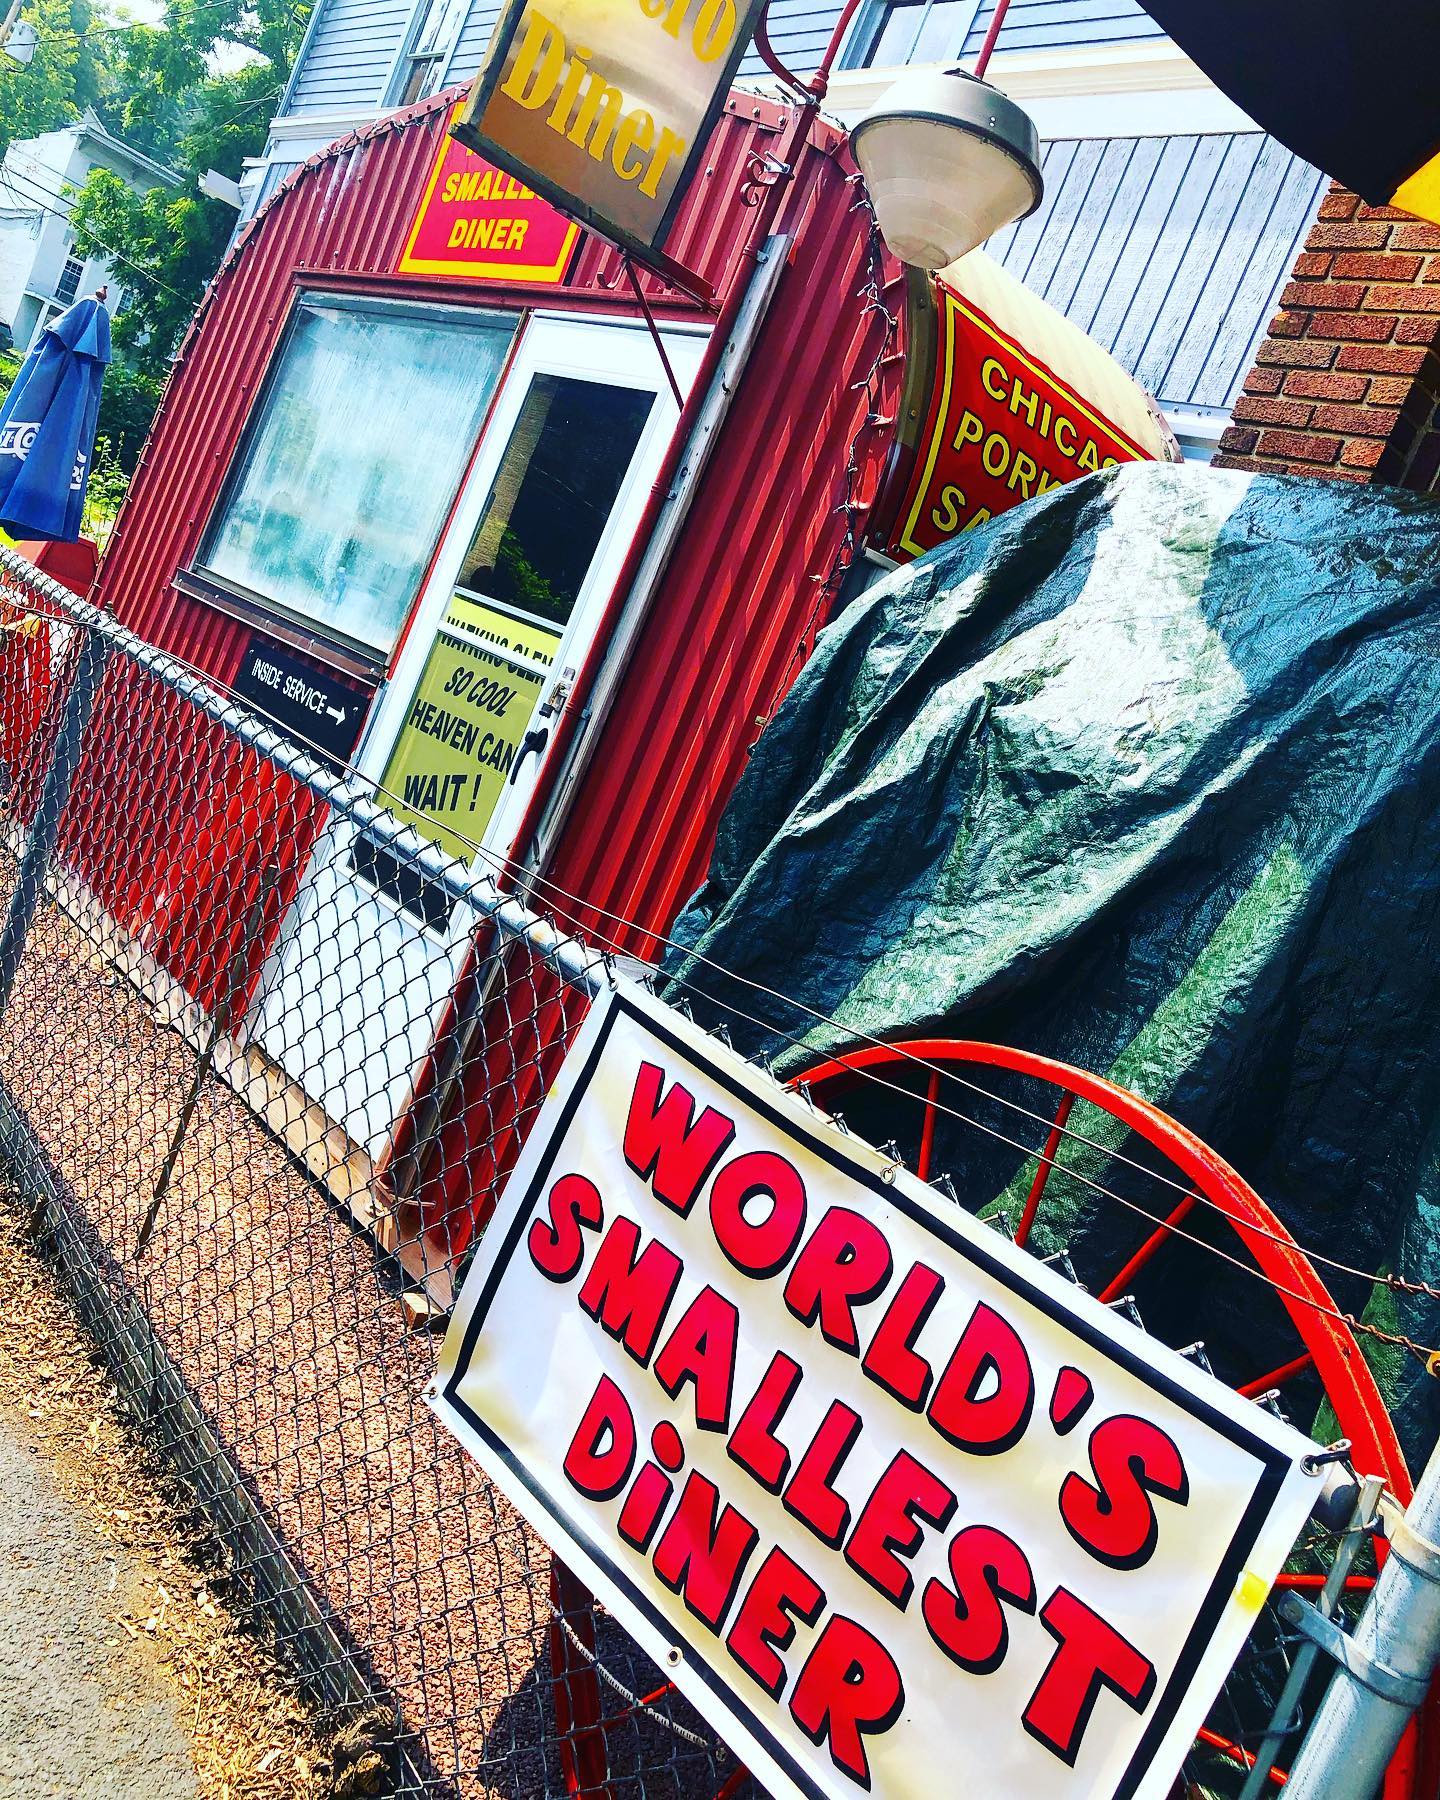 World's Smallest Diner: world record in Watkins Glen, New York